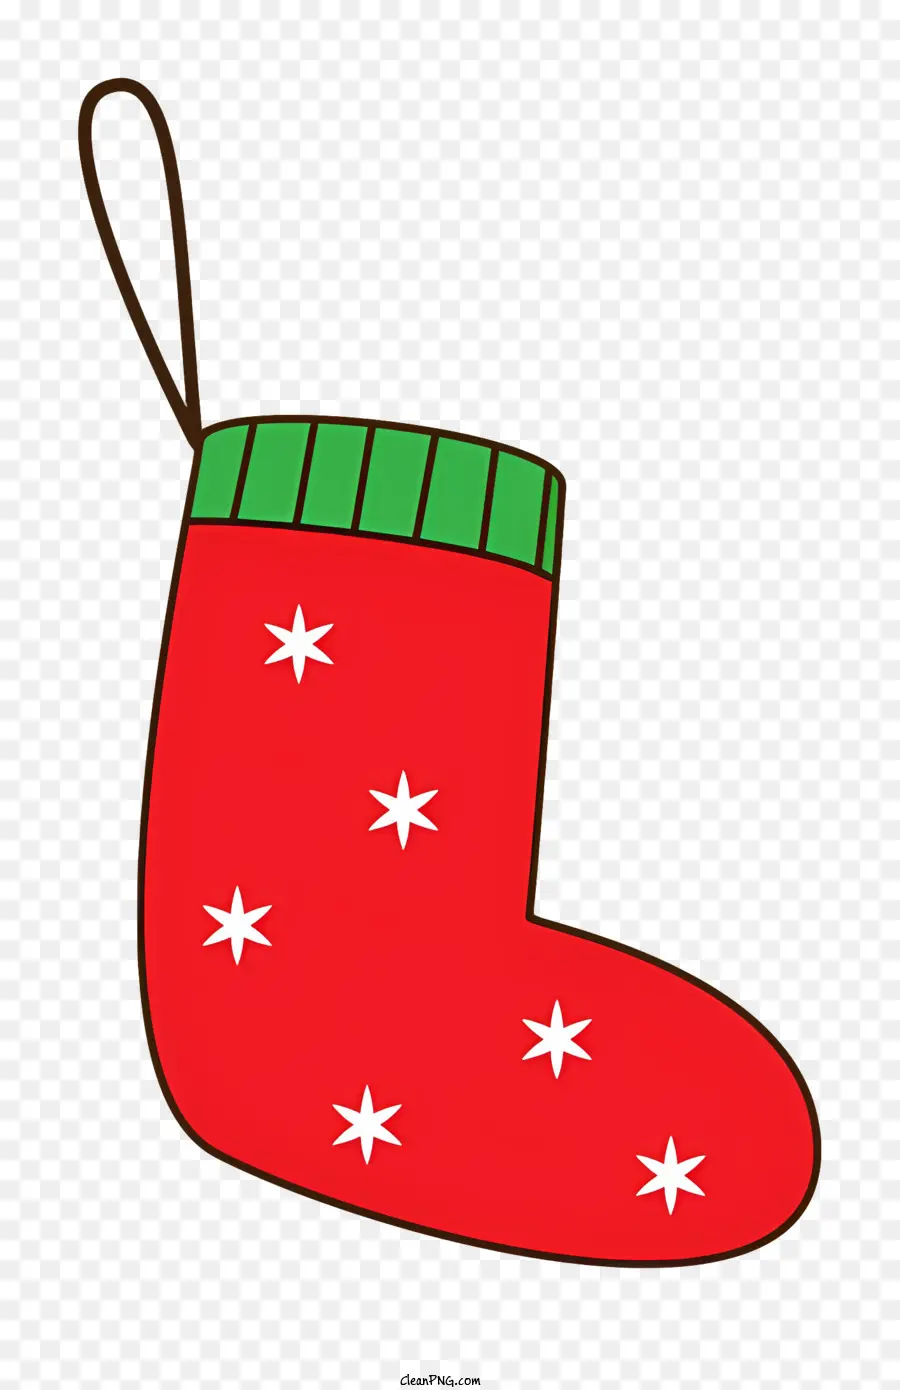 Cartoon Red Sockgrün und weiße Sterne Grüne Schnur hängende Socke - Festliche rote Socke mit Sternen und Schnur